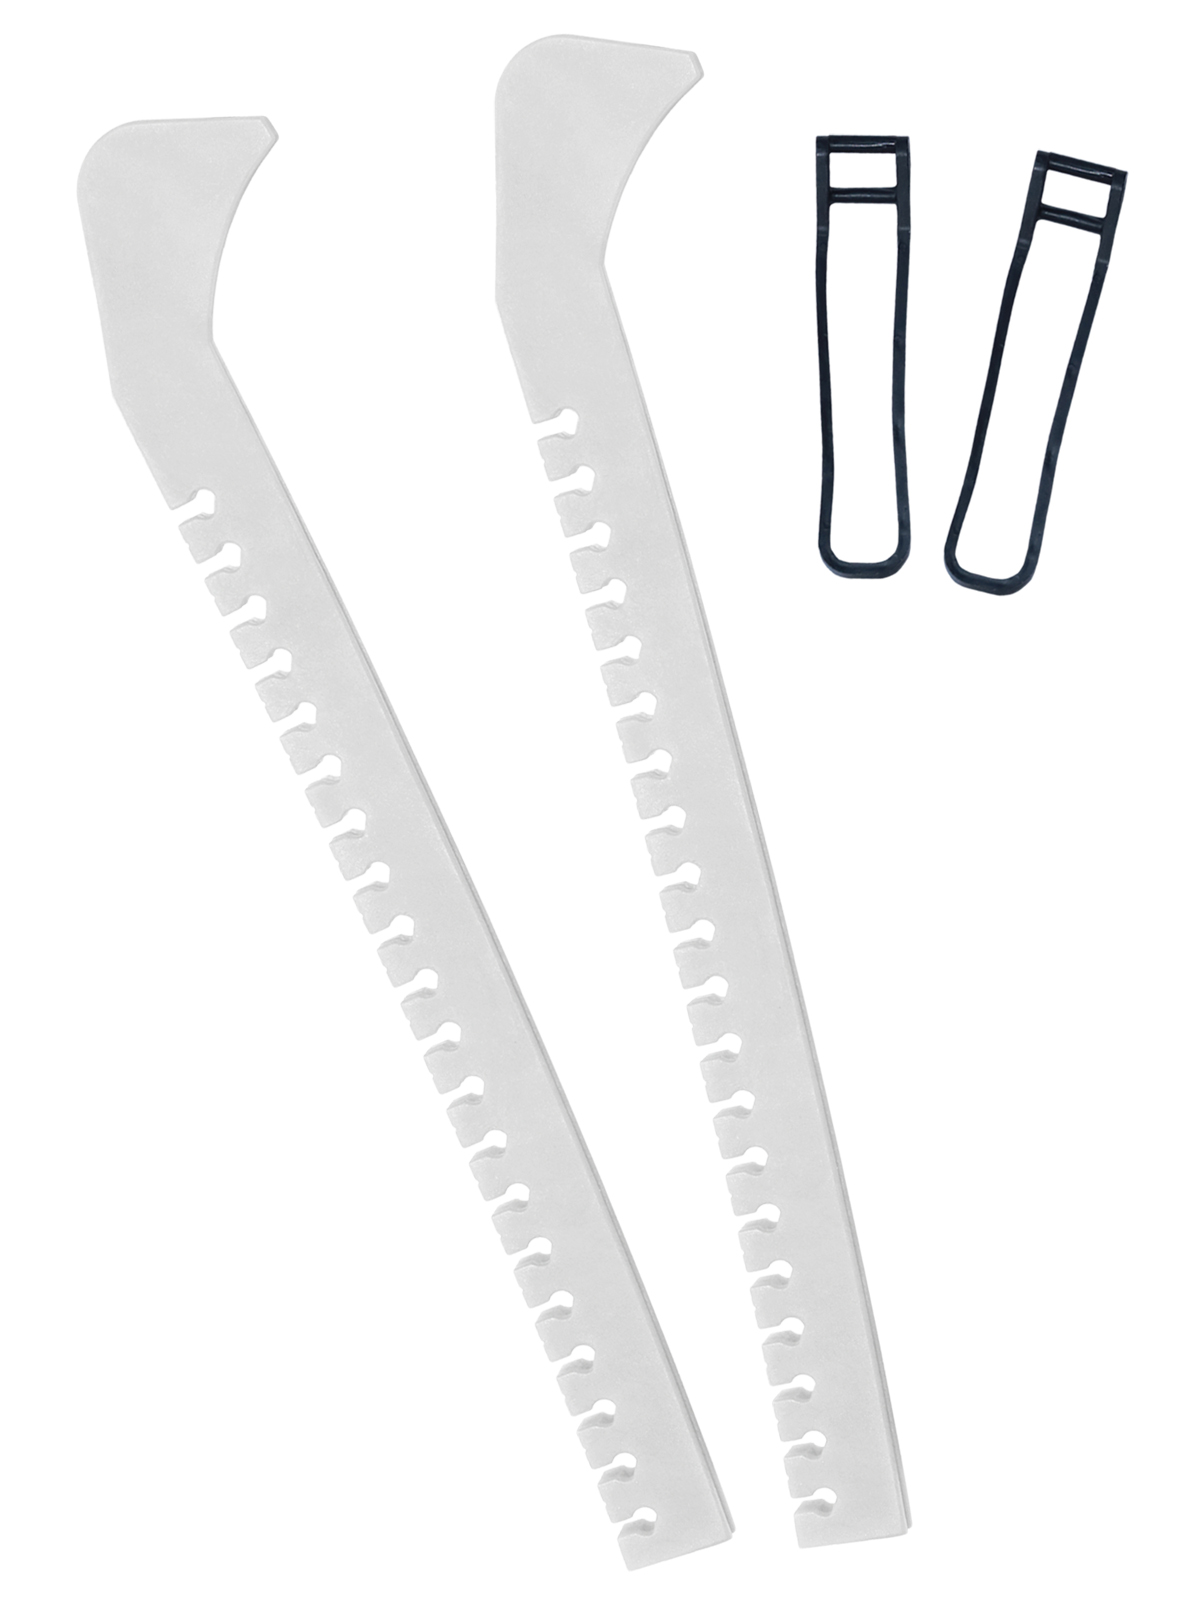 фото Чехлы на лезвия коньков/ чехлы для коньков белые задира-ленд